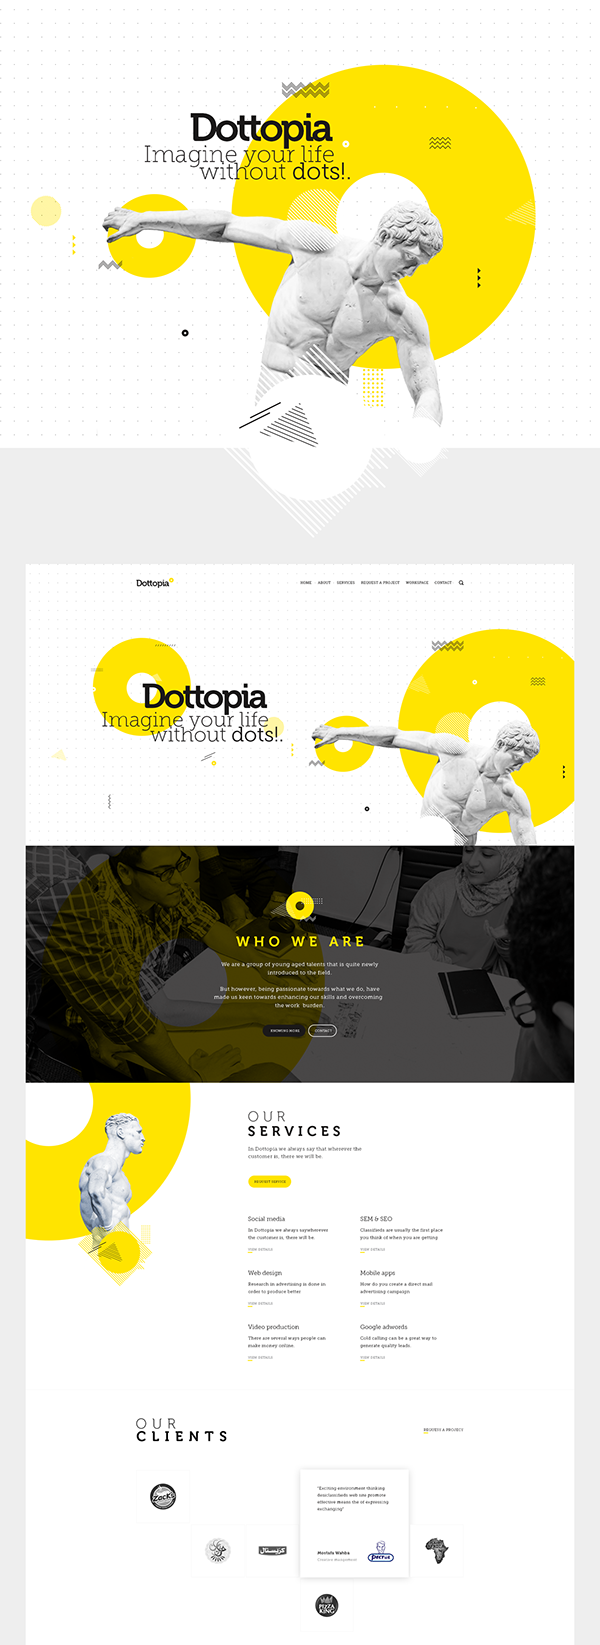 Dottopia web design UX/UI